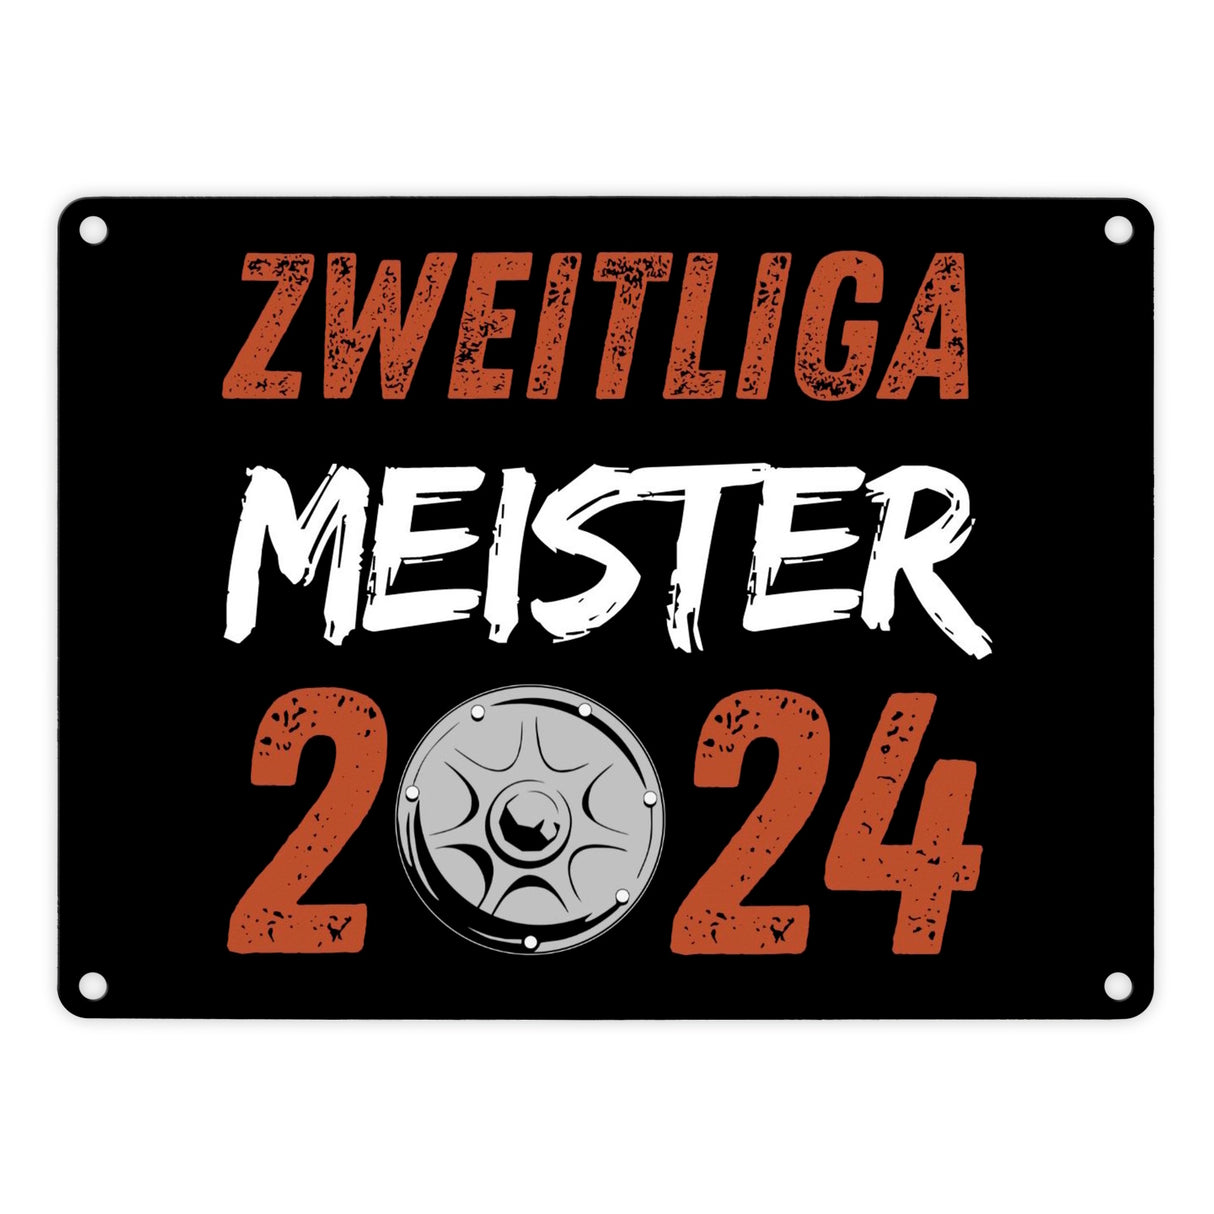 St. Pauli Meisterschale Metallschild in 15x20 cm mit Spruch Zweitliga Meister 2024